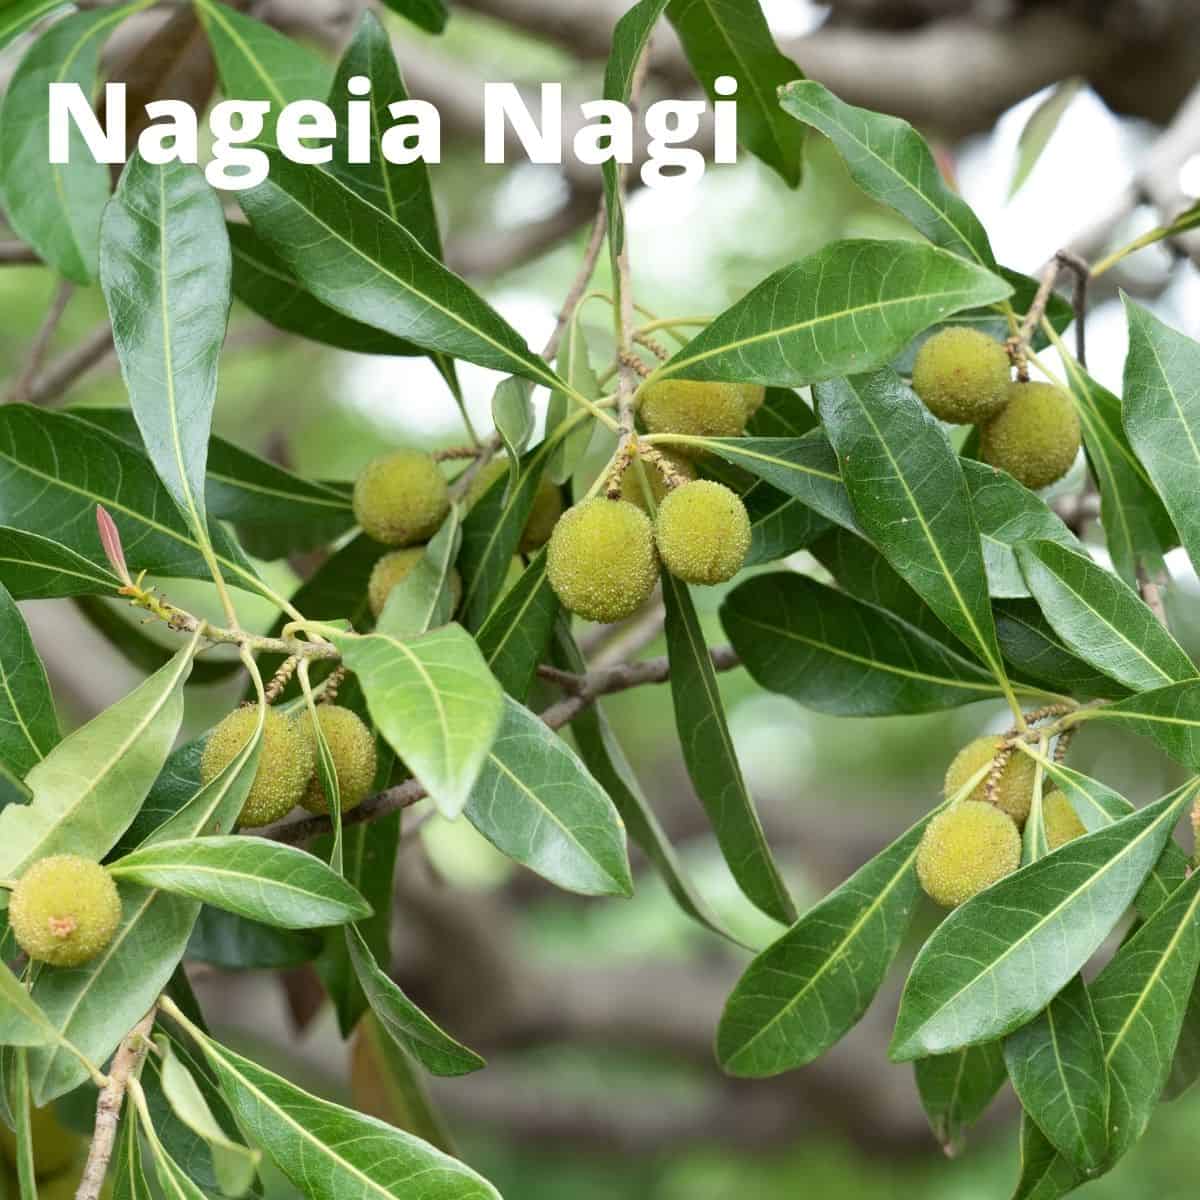 Nageia nagi fruit on branches. 